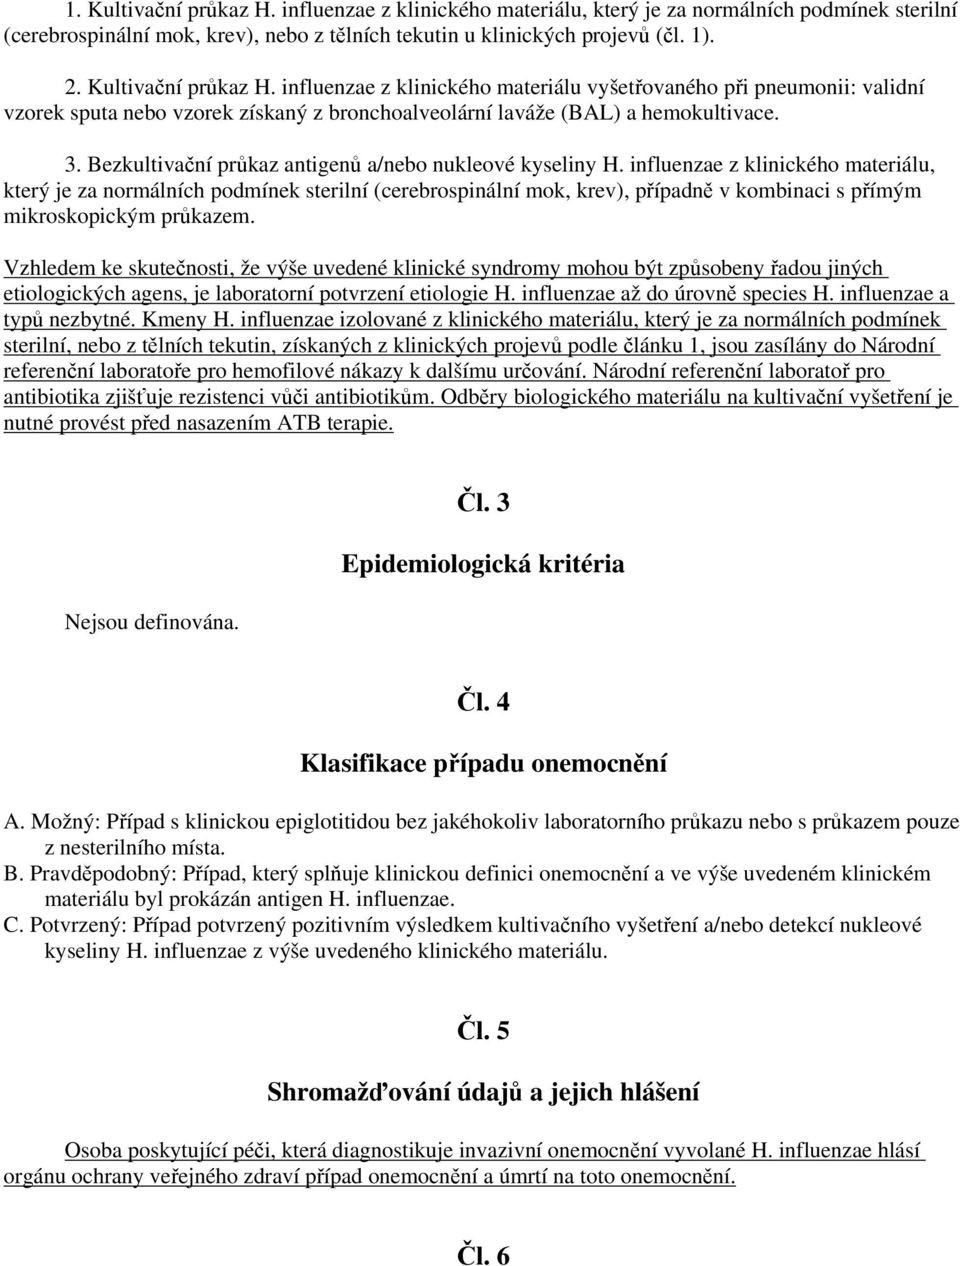 Bezkultivační průkaz antigenů a/nebo nukleové kyseliny H.